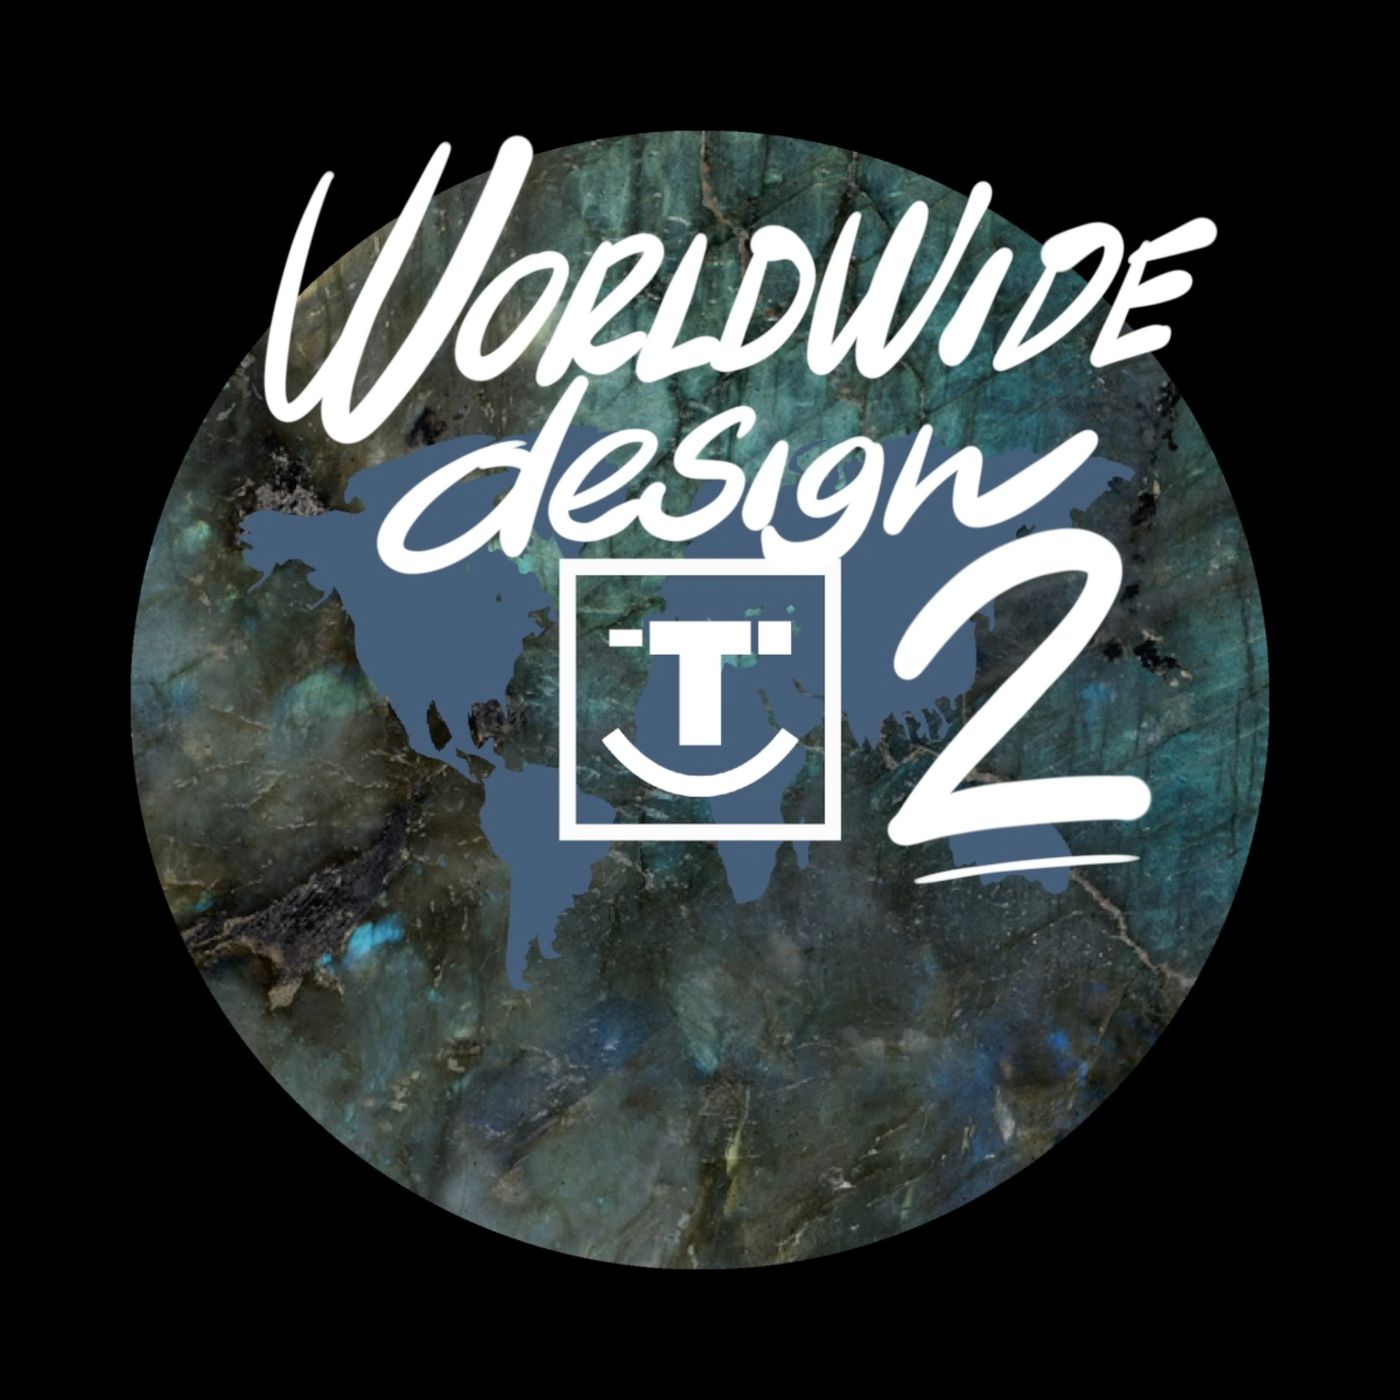 Worldwide Design 2